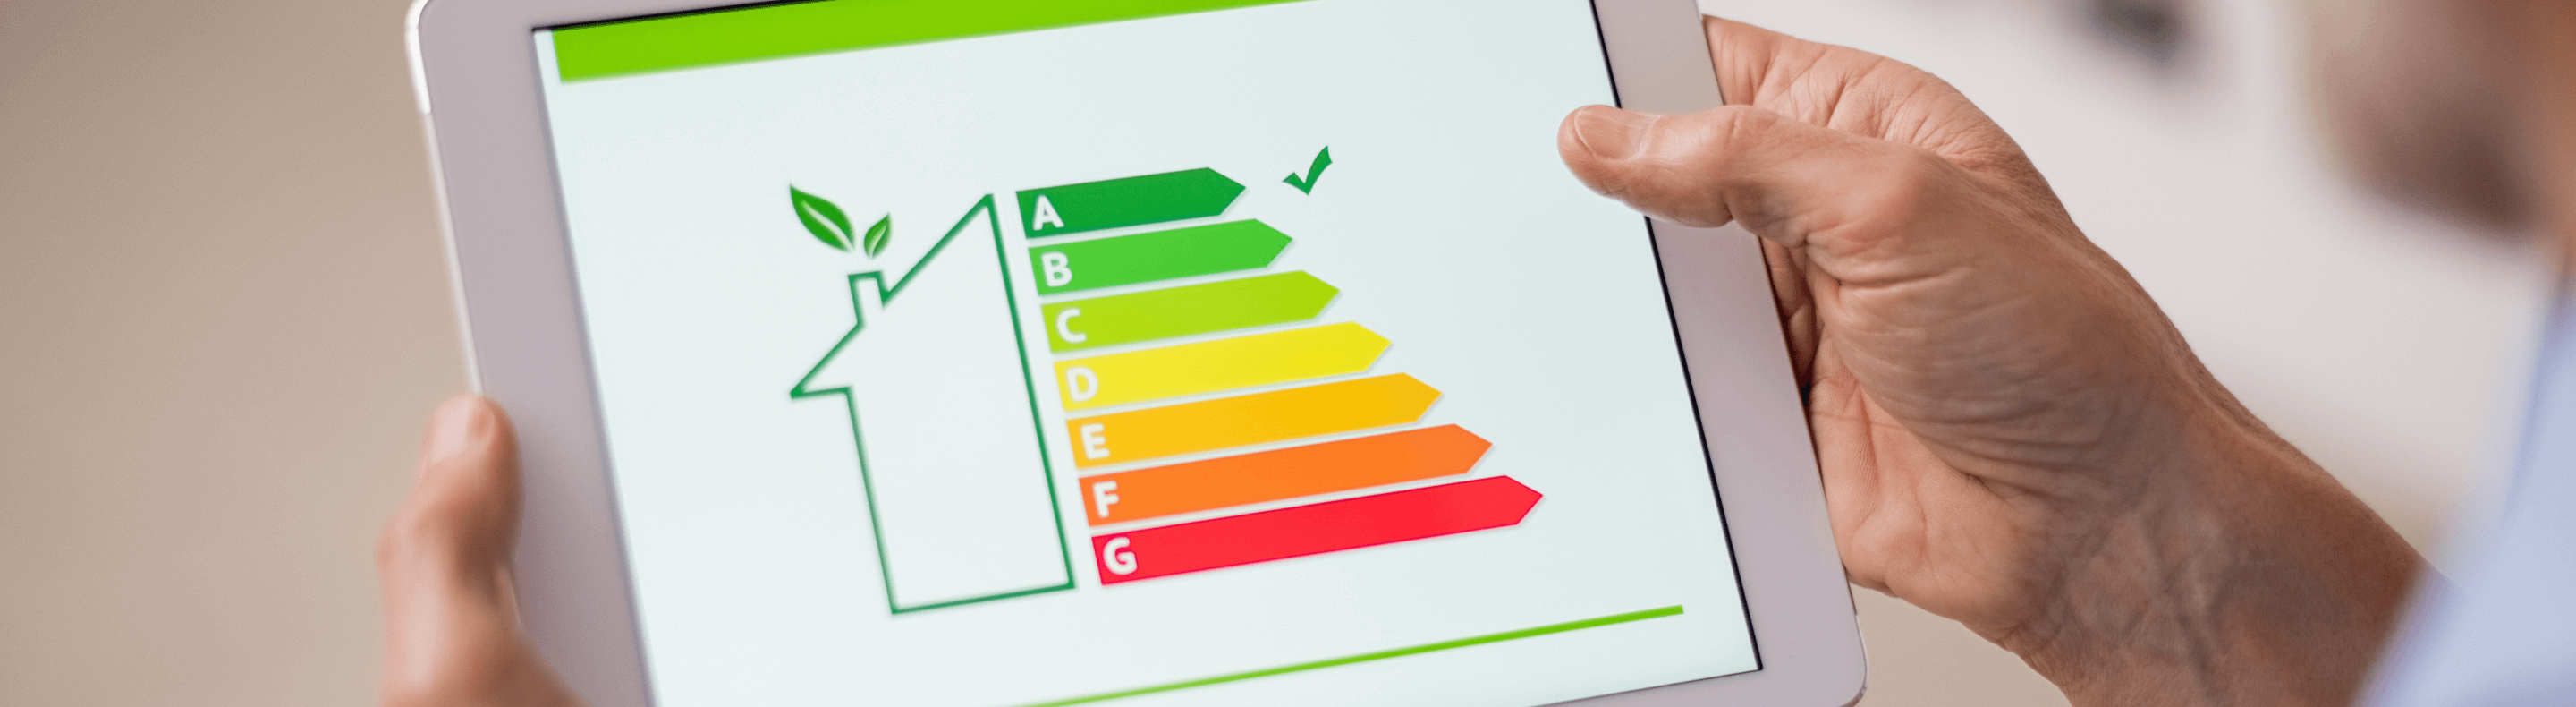 Tela de um tablete com tabela colorida indicando a qualidade do consumo de energia